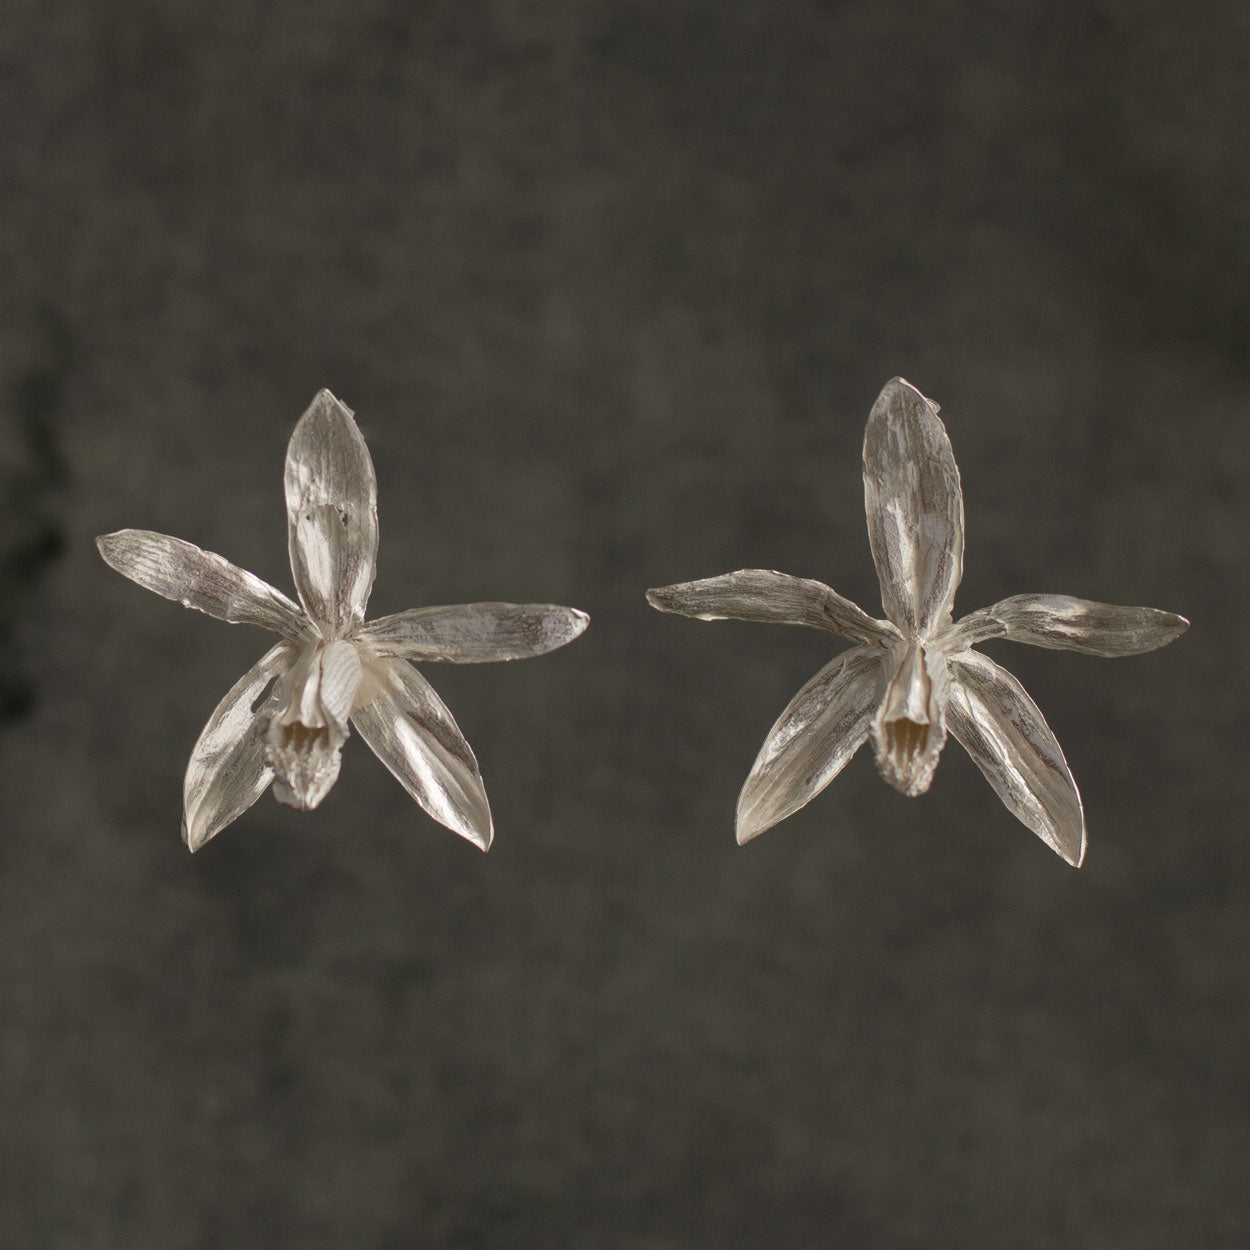 Aretes Orquídea Velo de Monja en plata ecológica 925, destacando la gracia y pureza de las flores naturales.